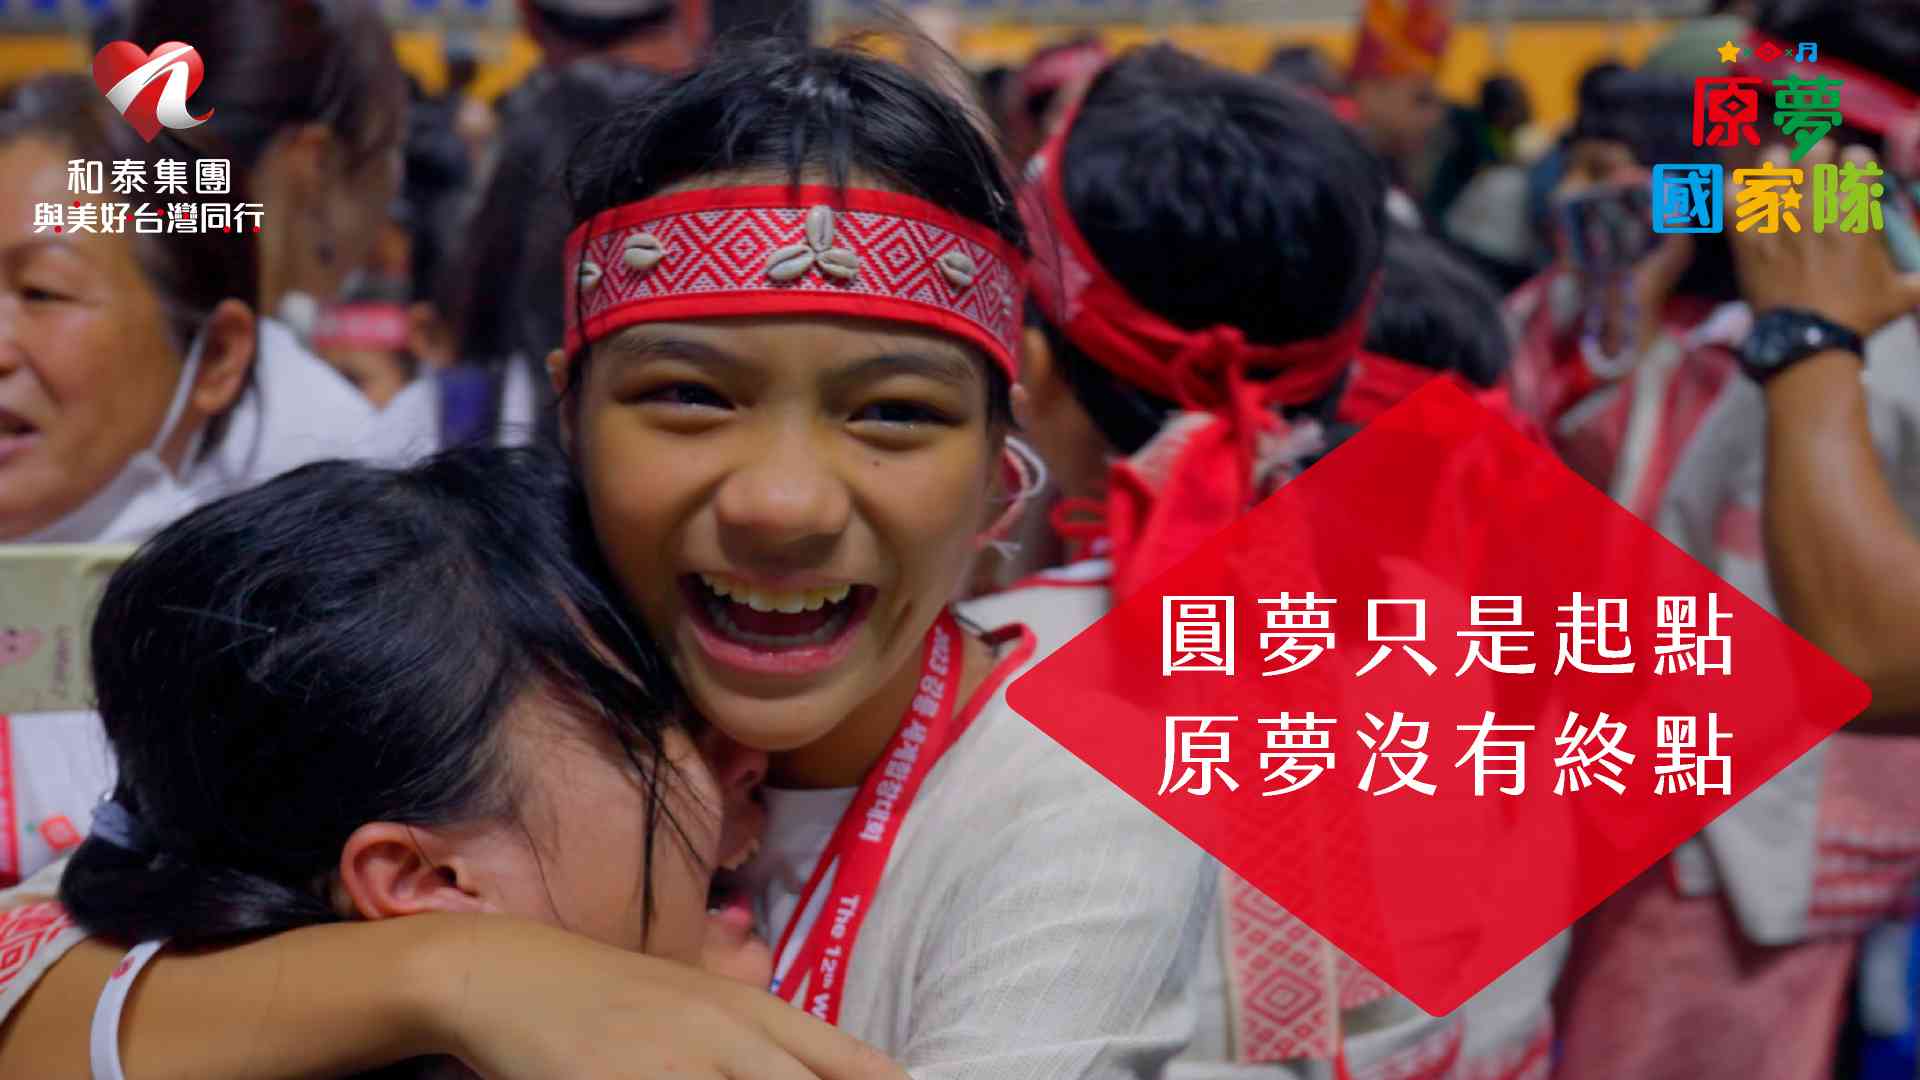 和泰集團「原夢國家隊」紀錄片感動上線 《讓夢想發聲》泰雅國小合唱團出國奪金笑淚紀實